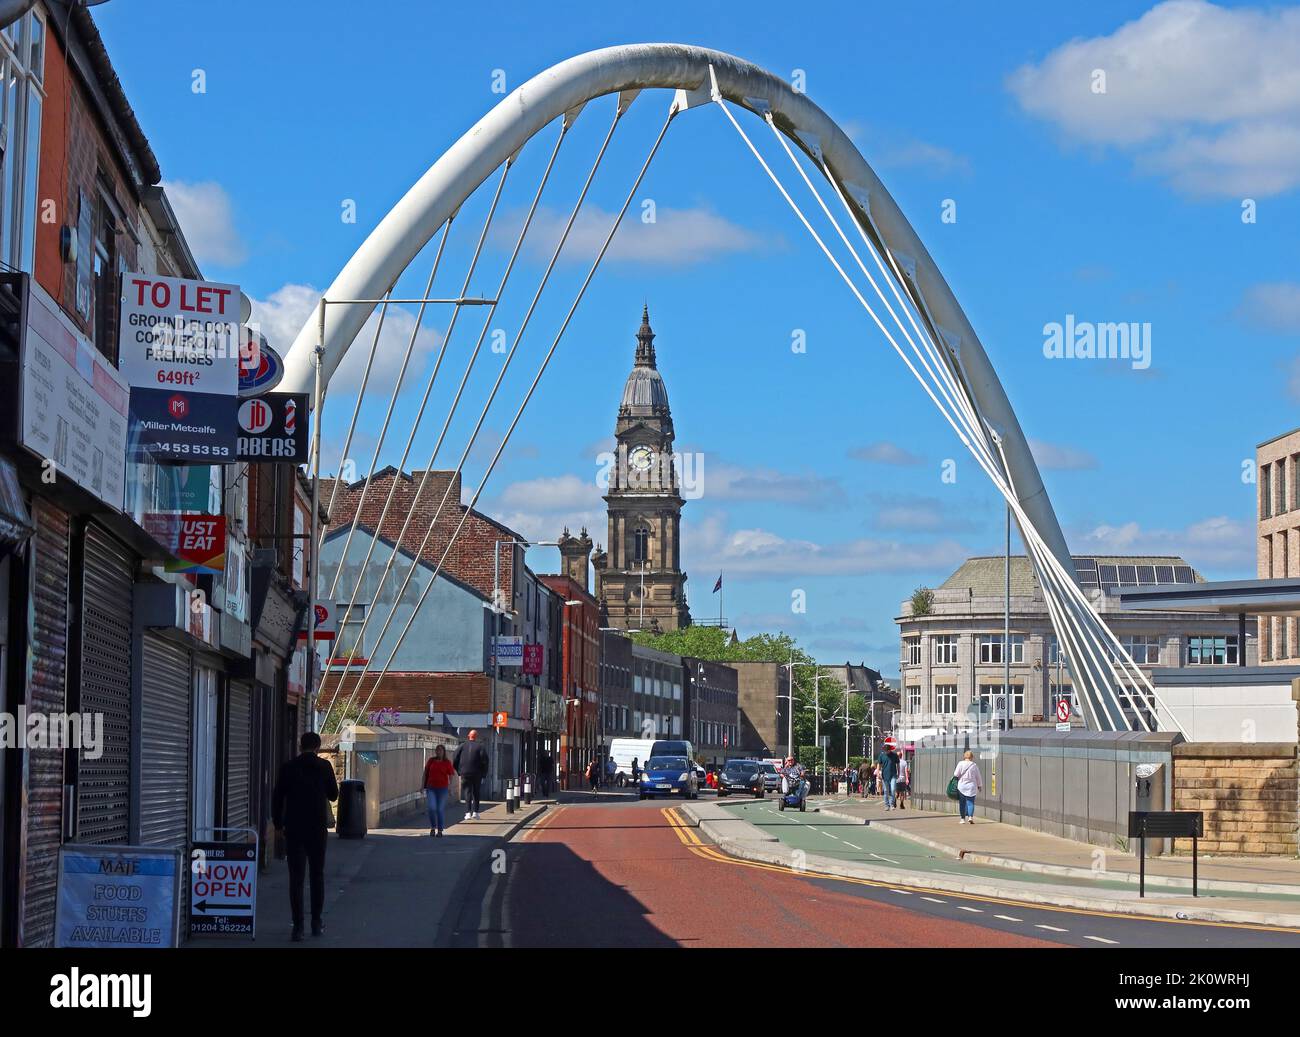 Der weiße Bolton Arch in der Newport Street, der vom Bolton Bahnhof und der Kreuzung zum Rathaus und Stadtzentrum führt - optimistisch für die Zukunft Stockfoto